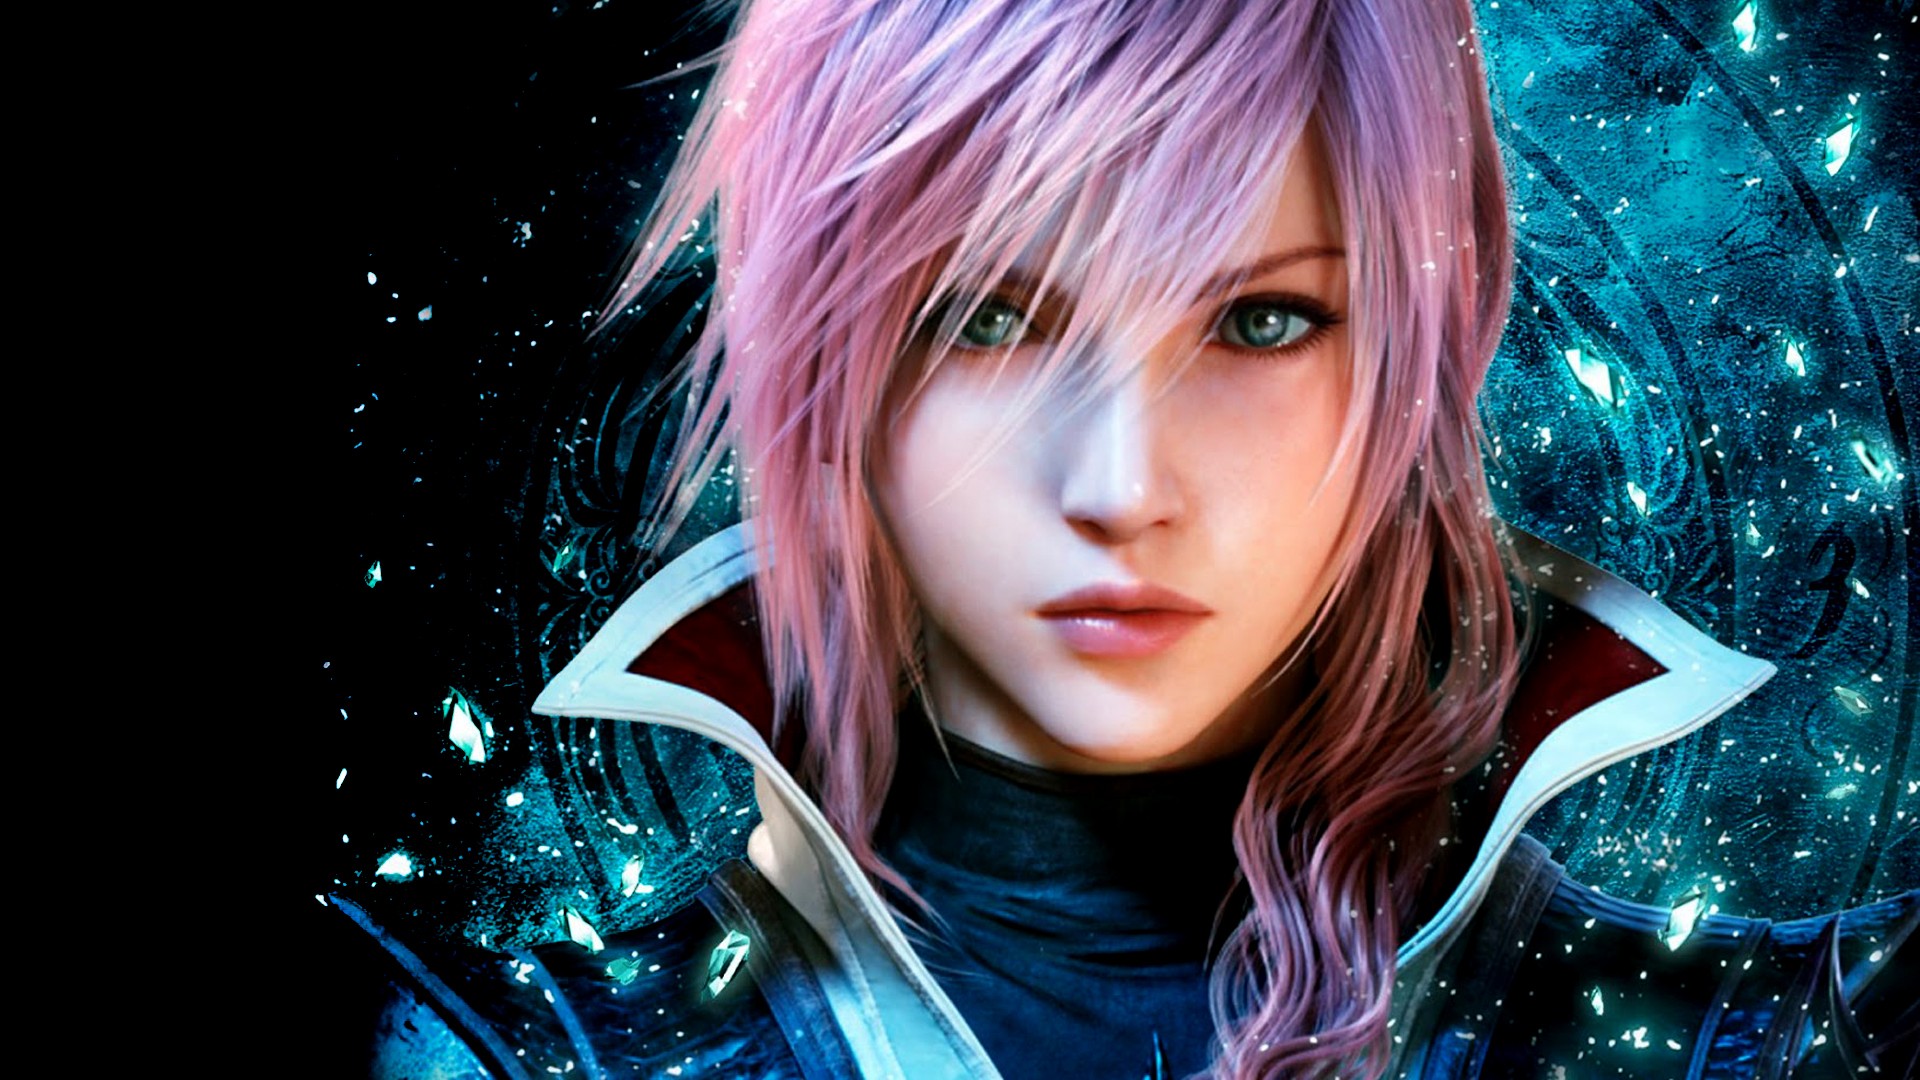 Lightning Returns - Final Fantasy XIII - Wallpaper Full HD